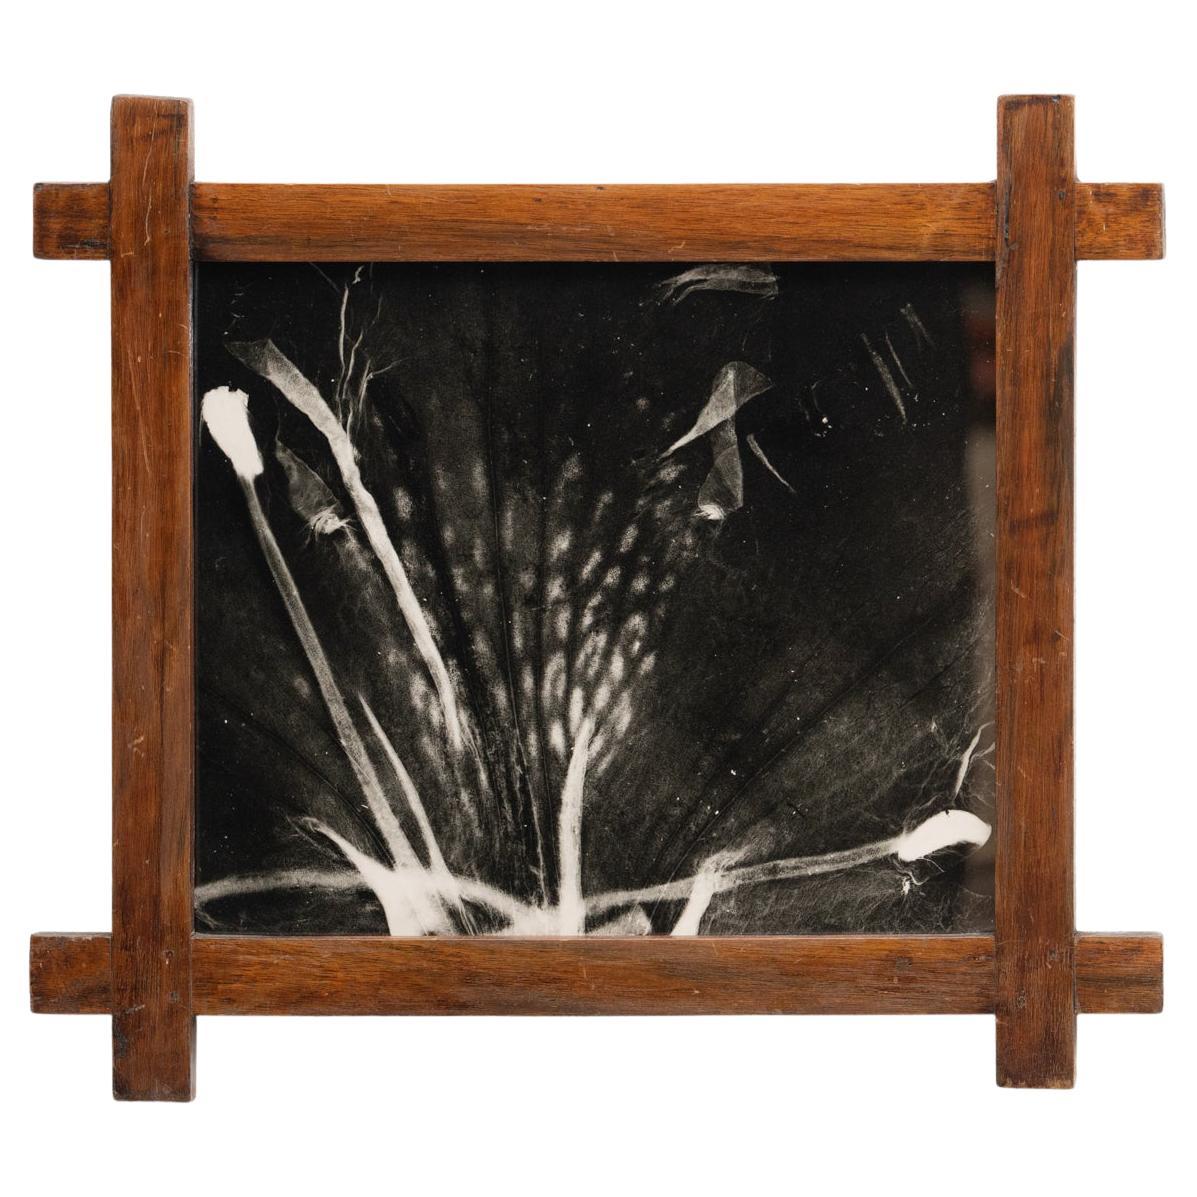 Enrico Garzaro Black and White Contemporary Botanical Photography, circa 2015